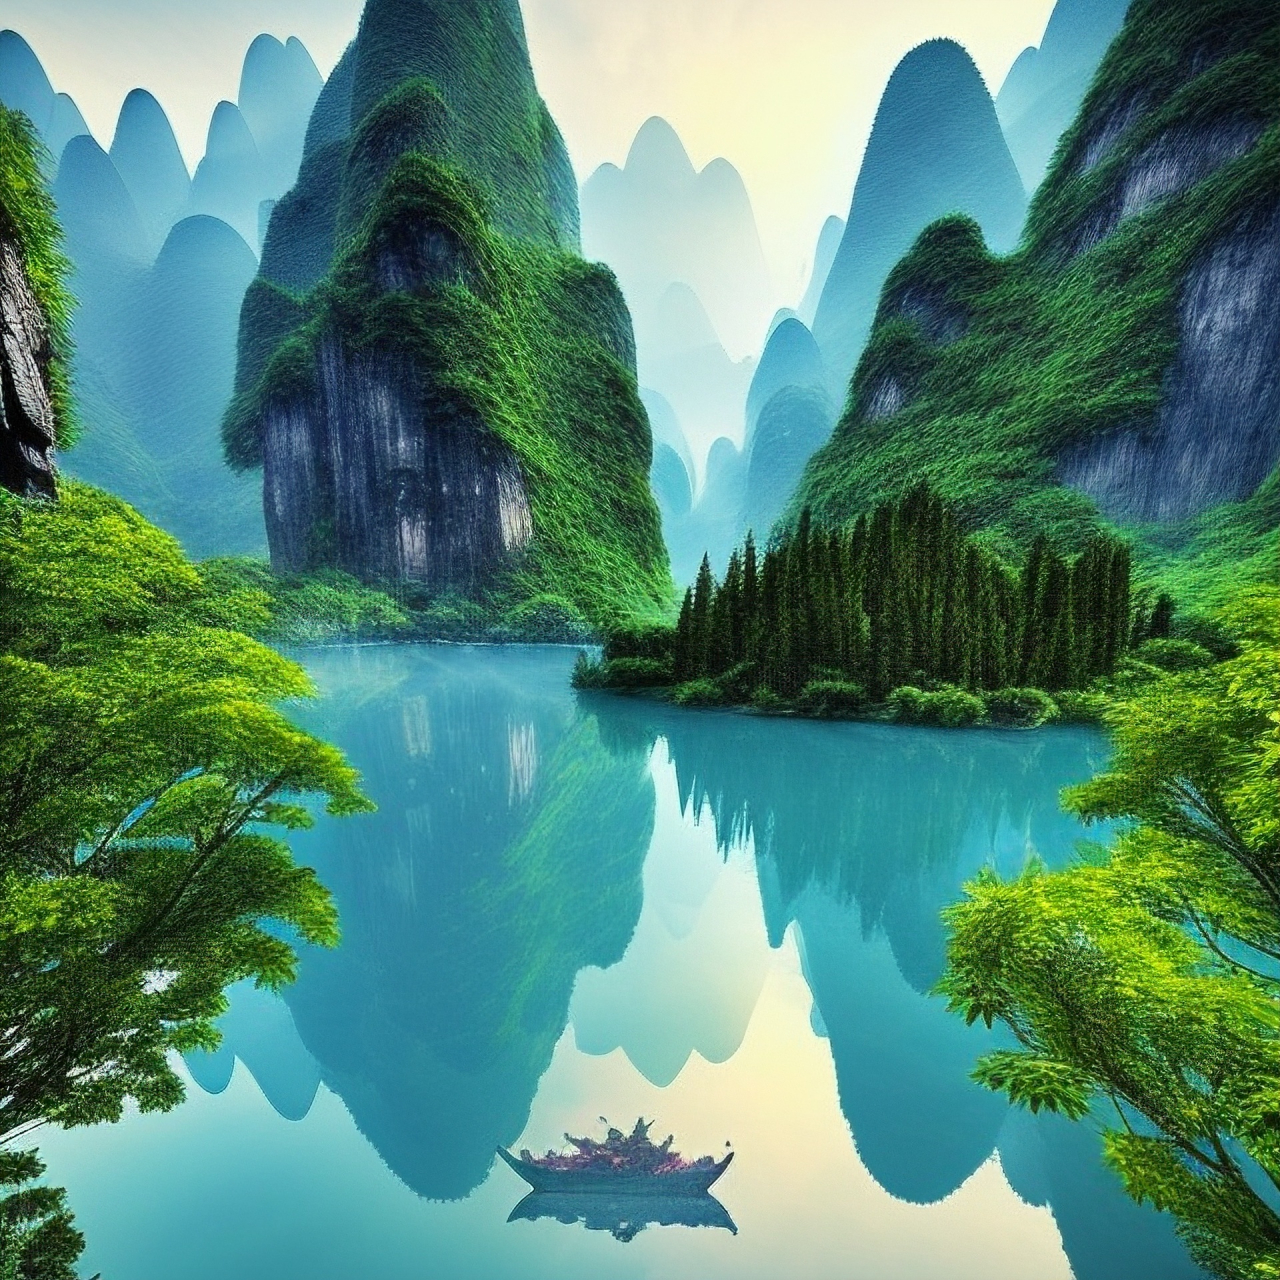 桂林山水真是太美了,我实在是太喜欢这里了!